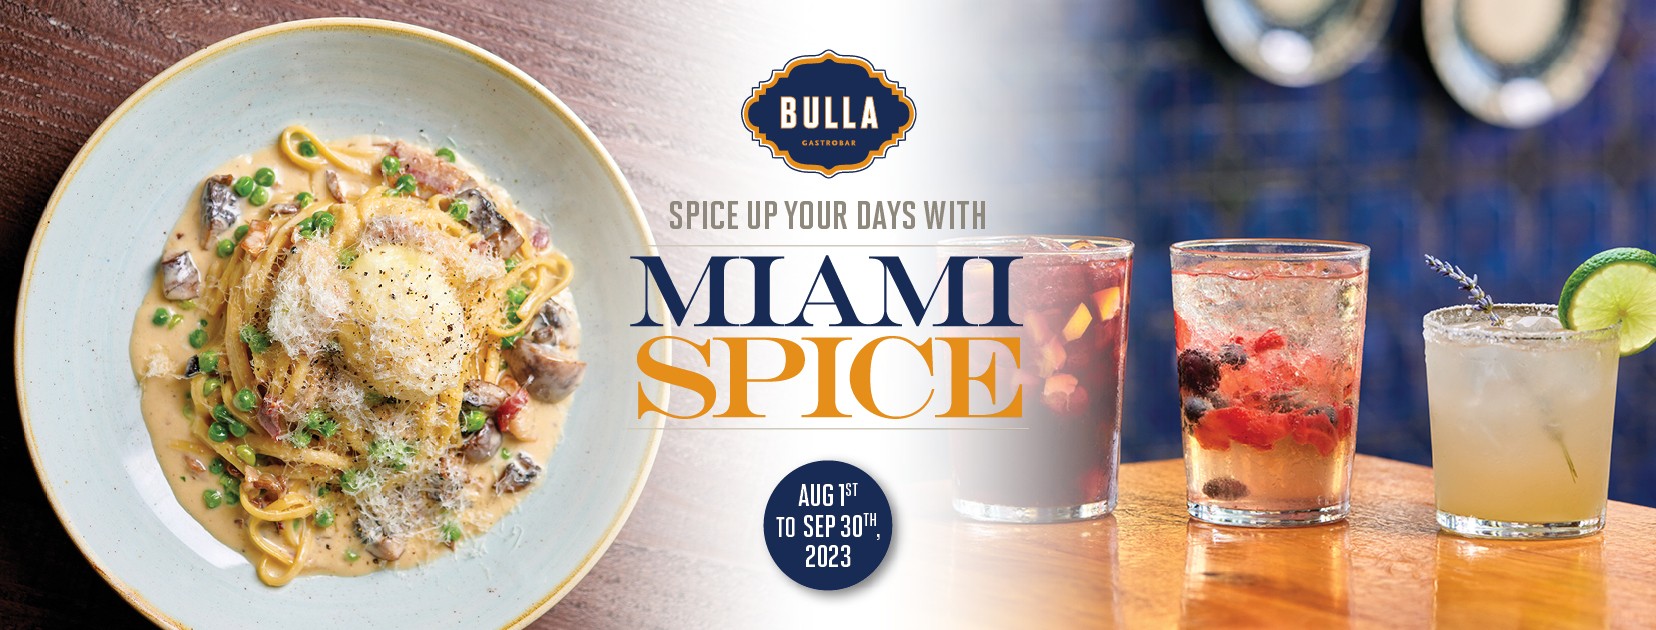 Miami Spice at Bulla Gastrobar